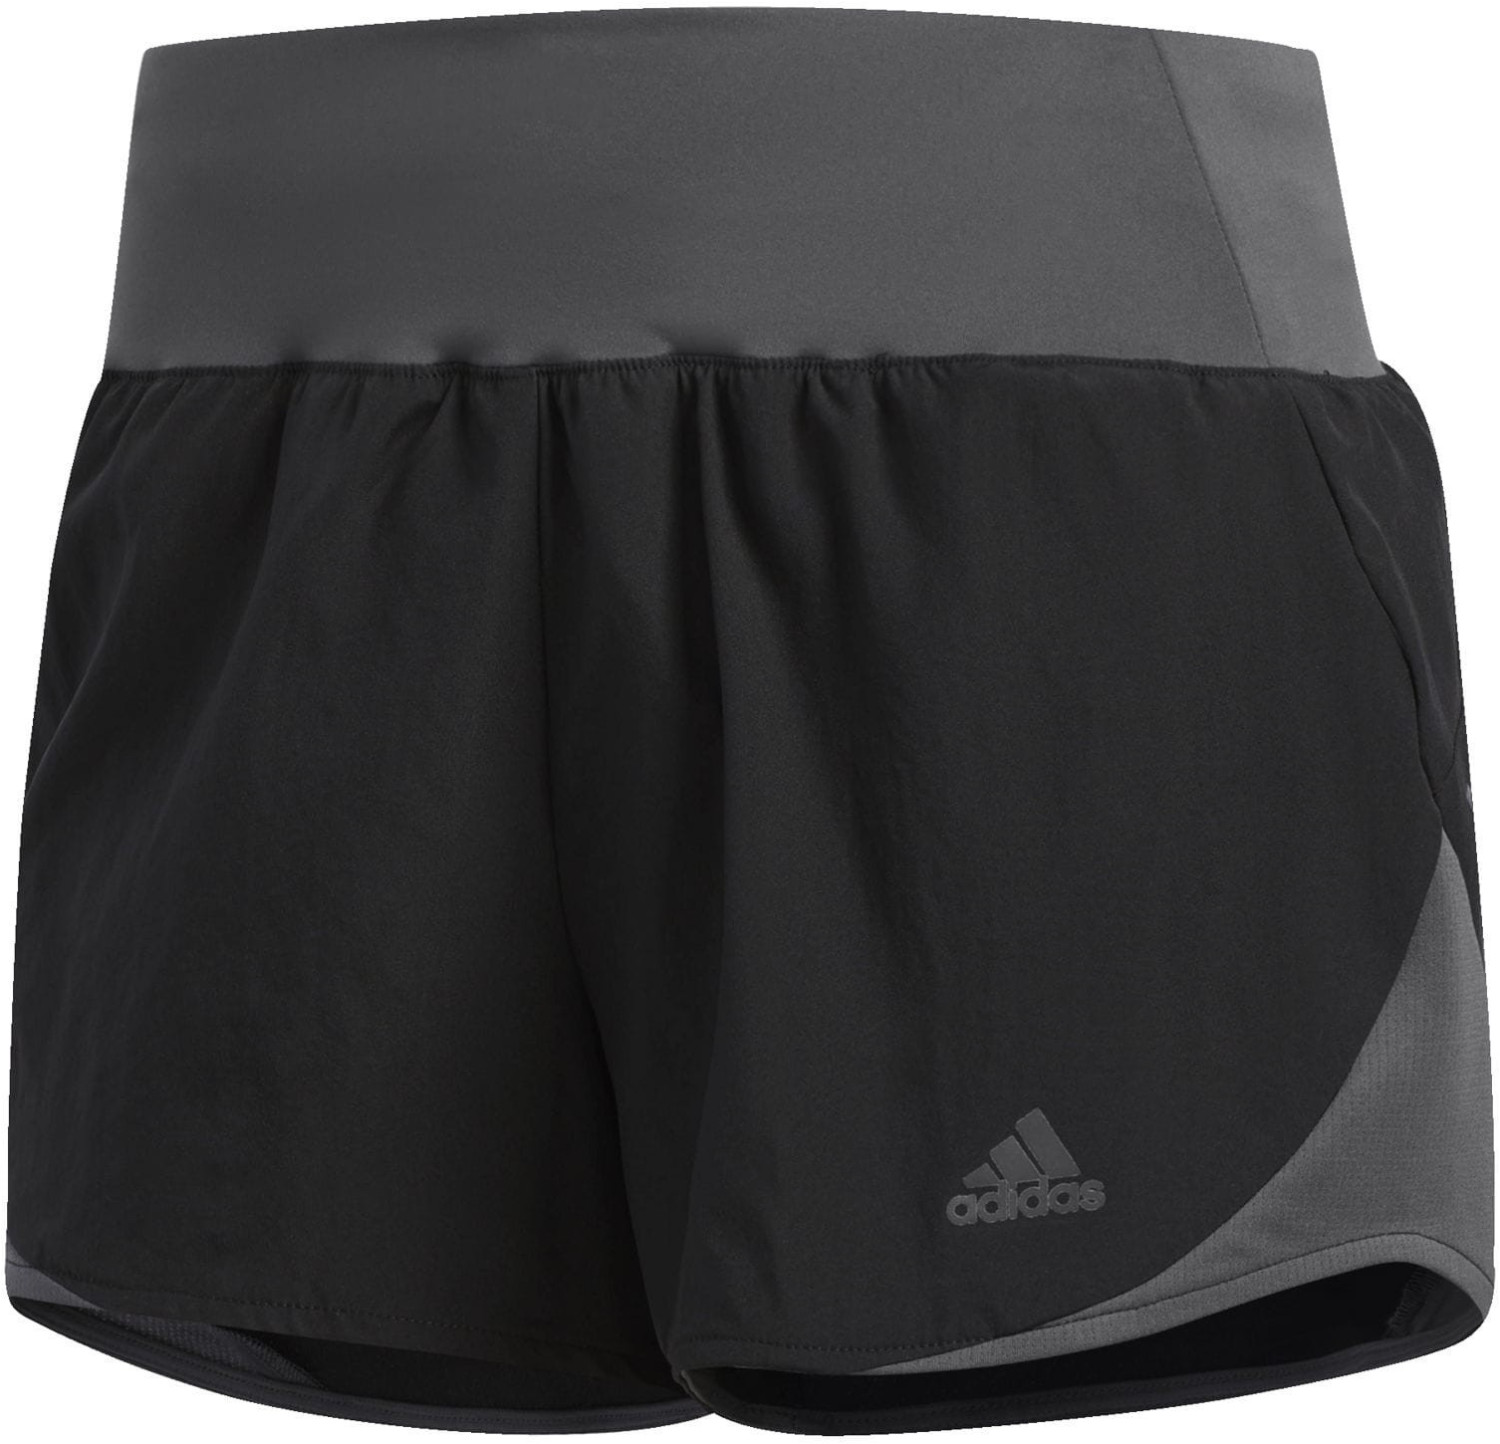 Adidas Run It Shorts Women black/grey six